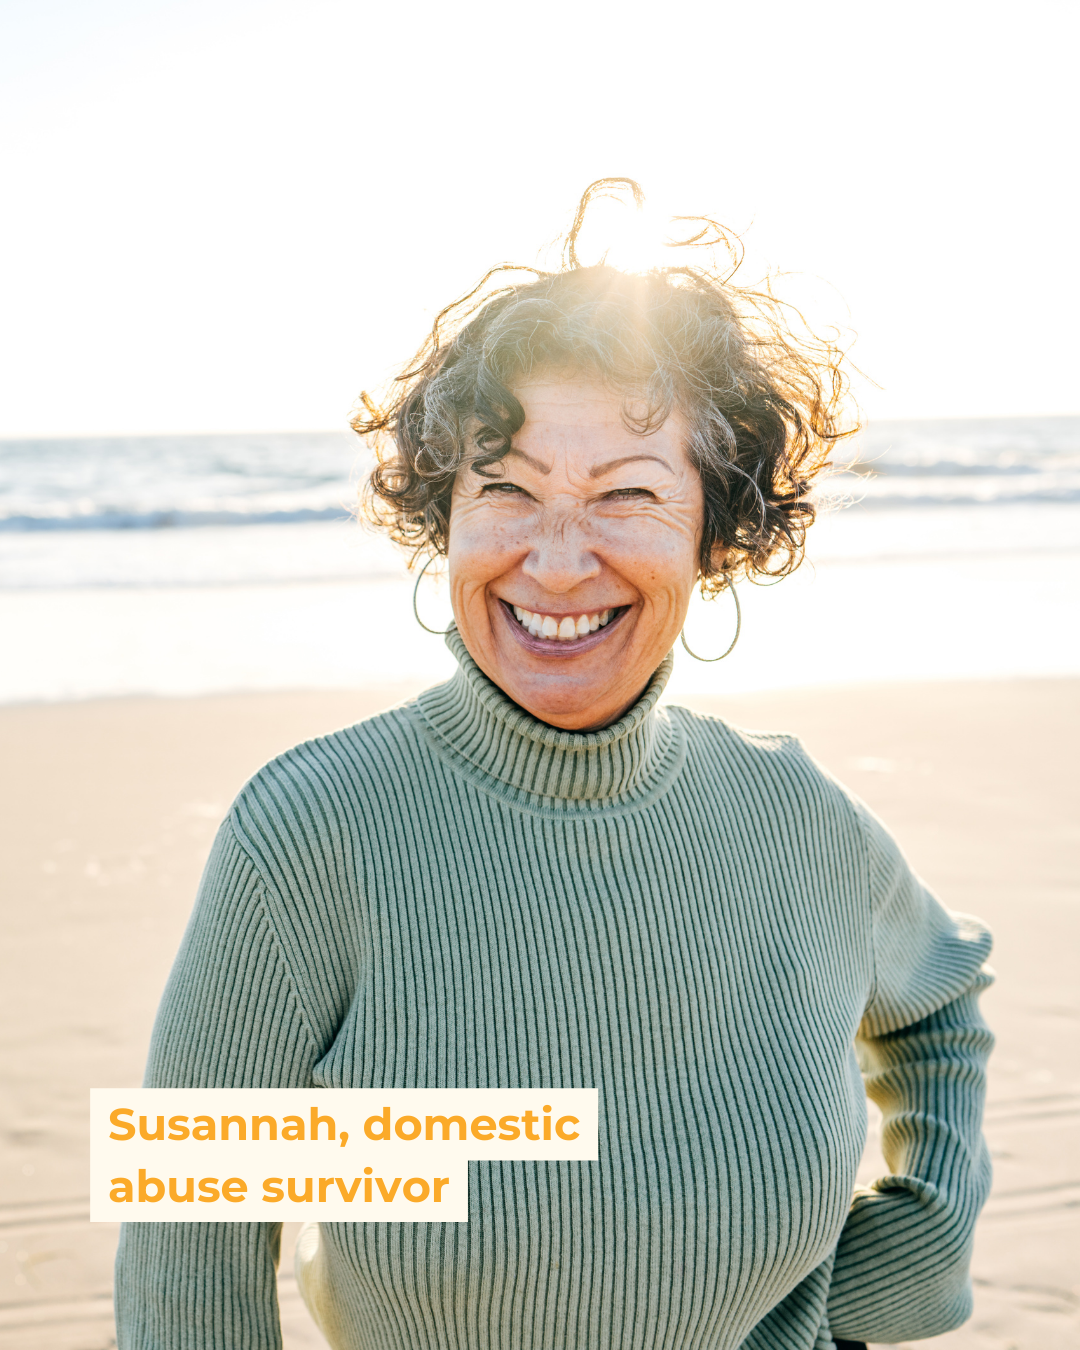 Susannah, domestic abuse survivor